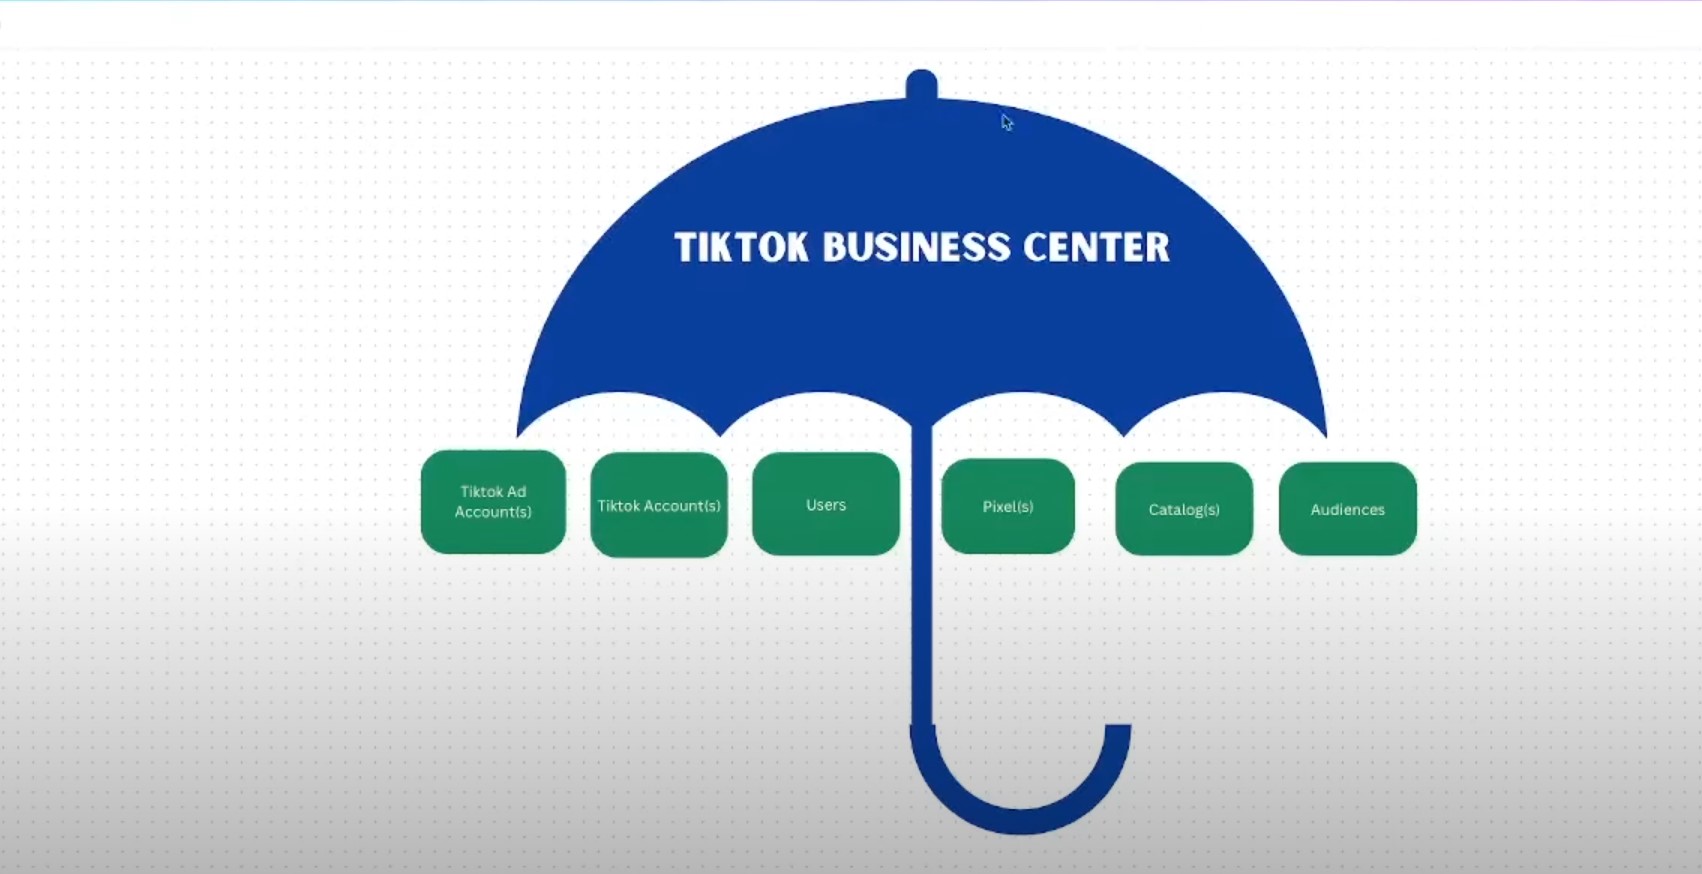 TikTok Business Center umbrella